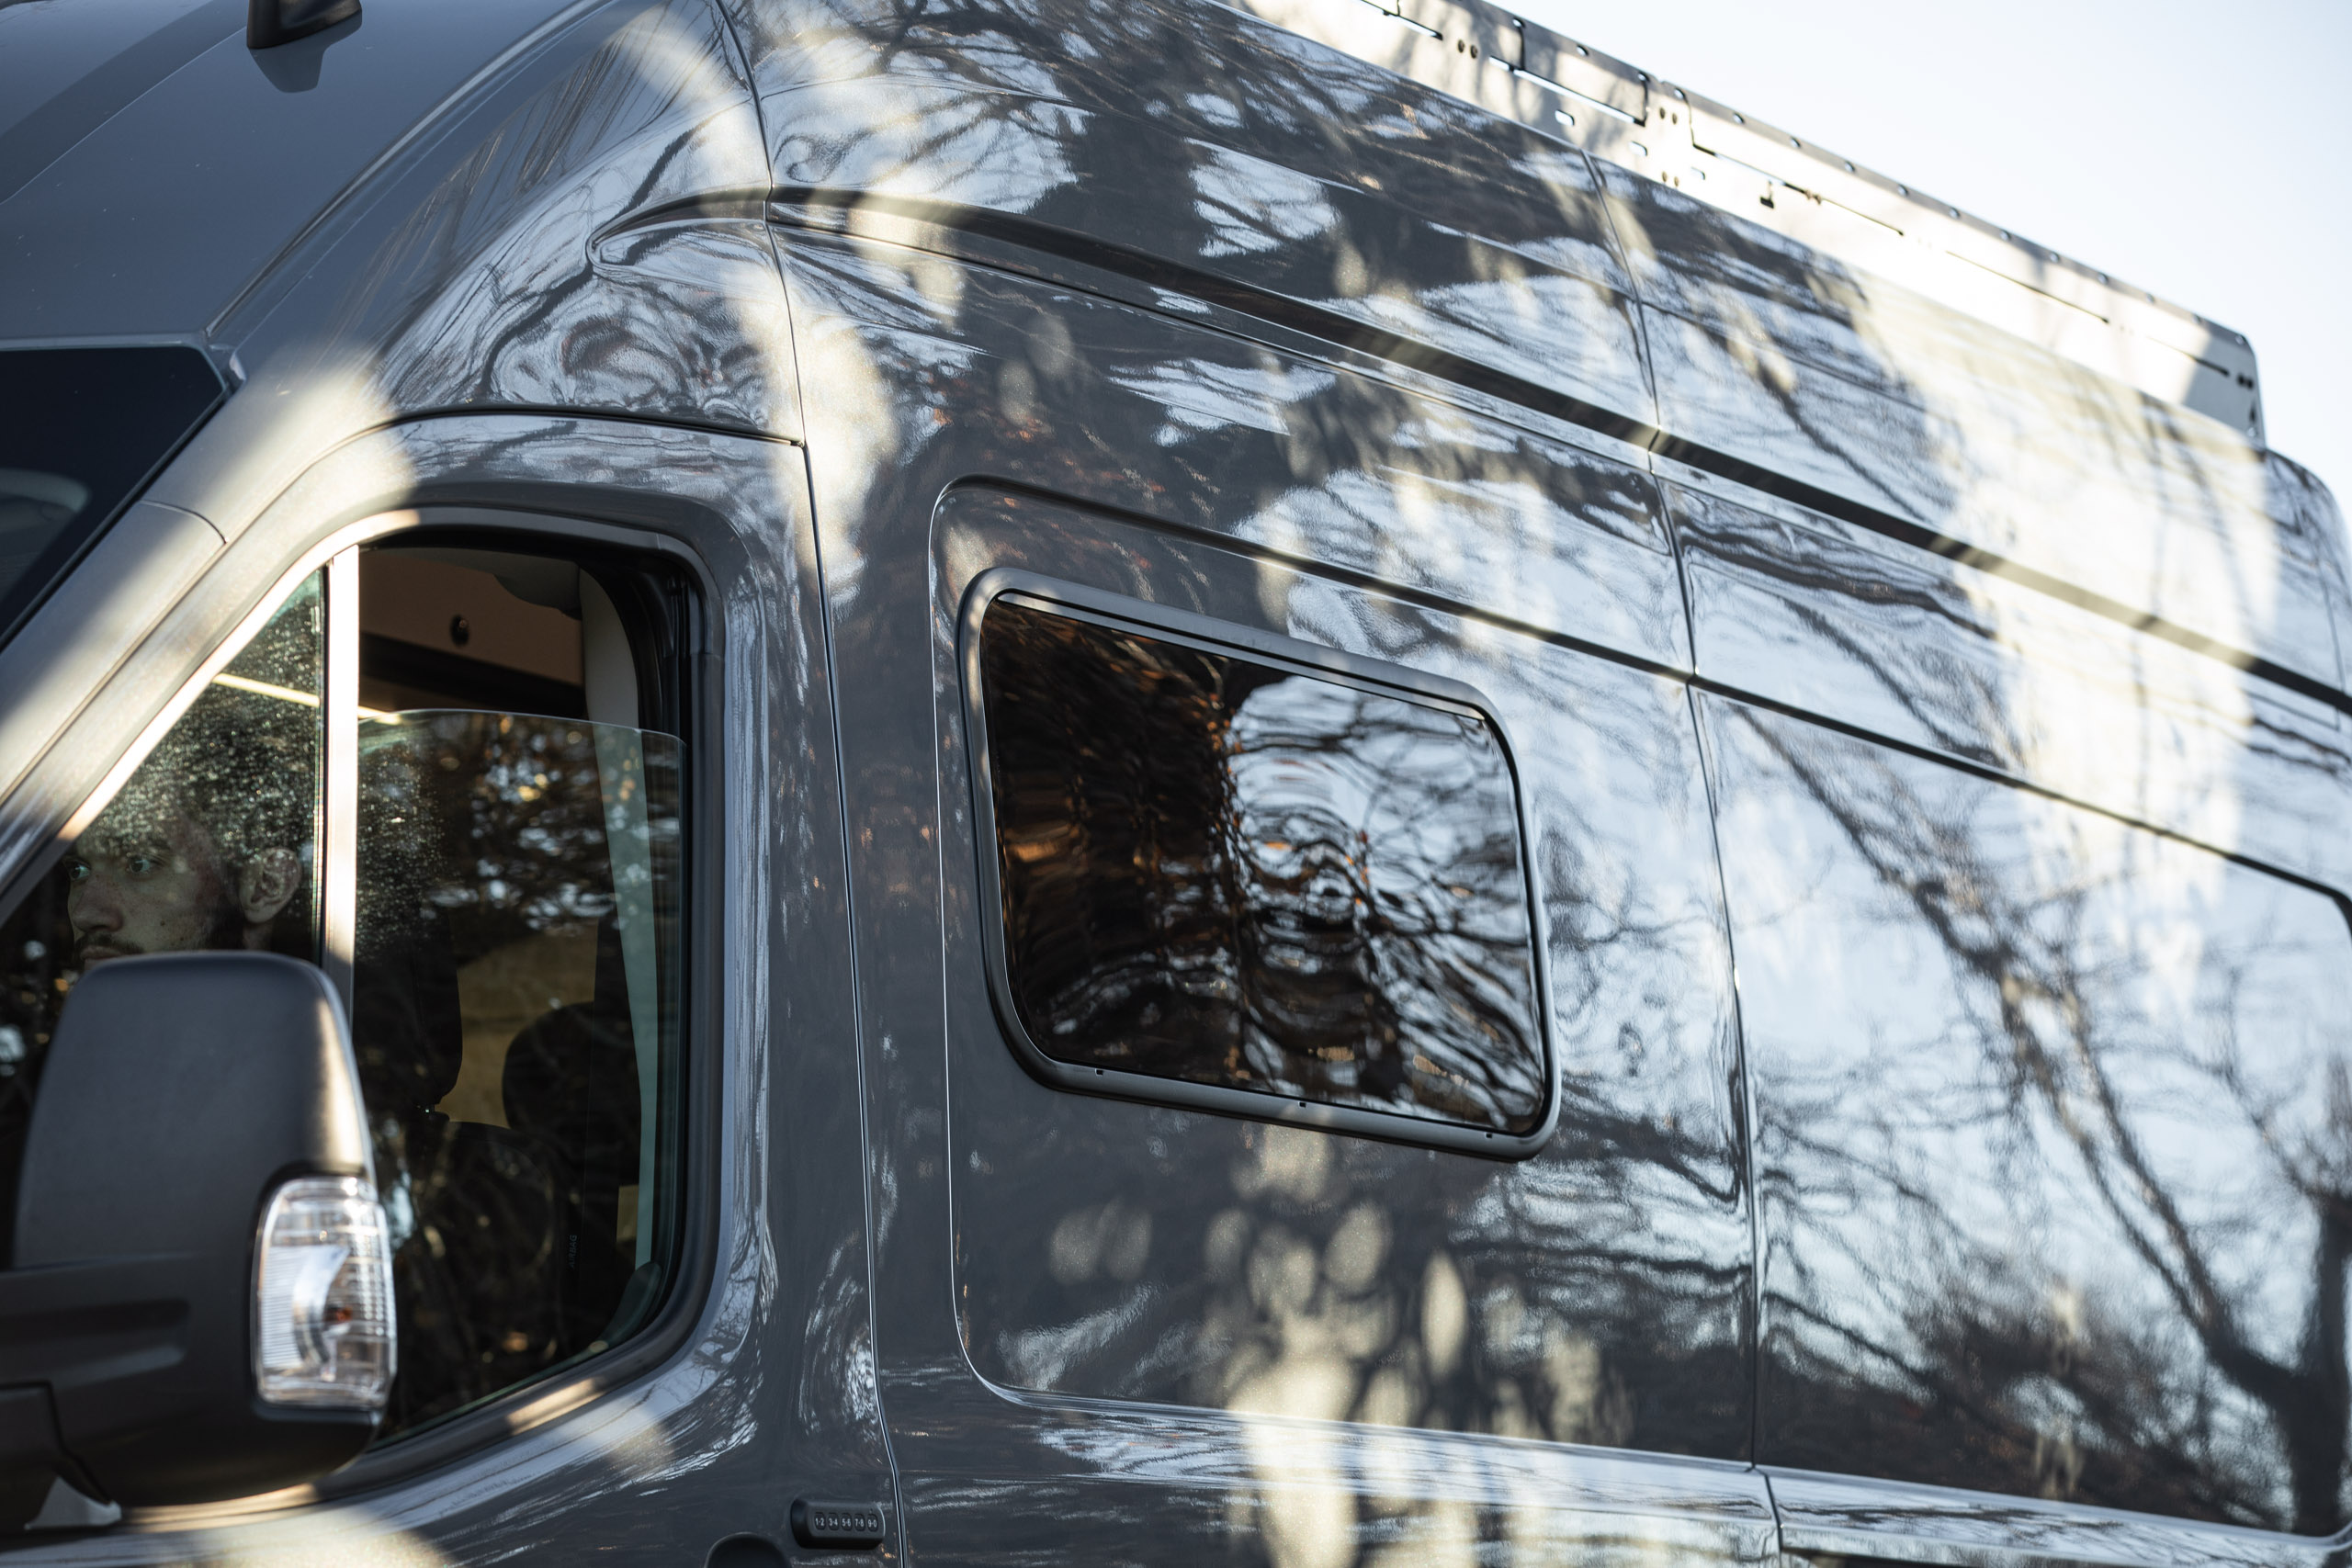 Lippert Stilo Sliding Support For Table - Wilderness Vans